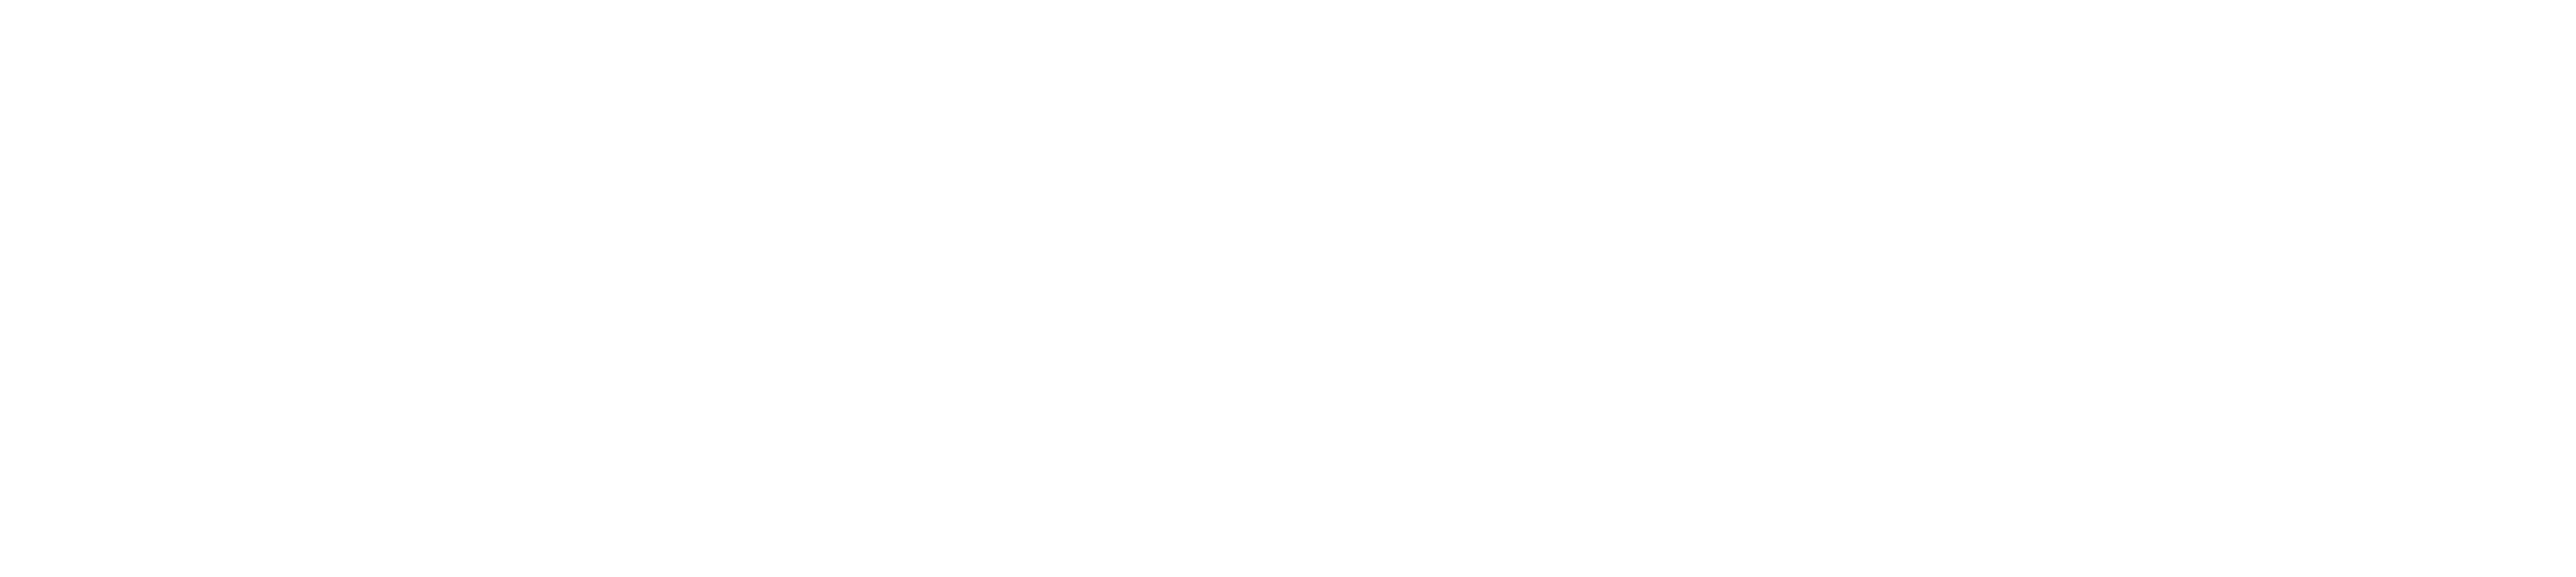 SabbathRest